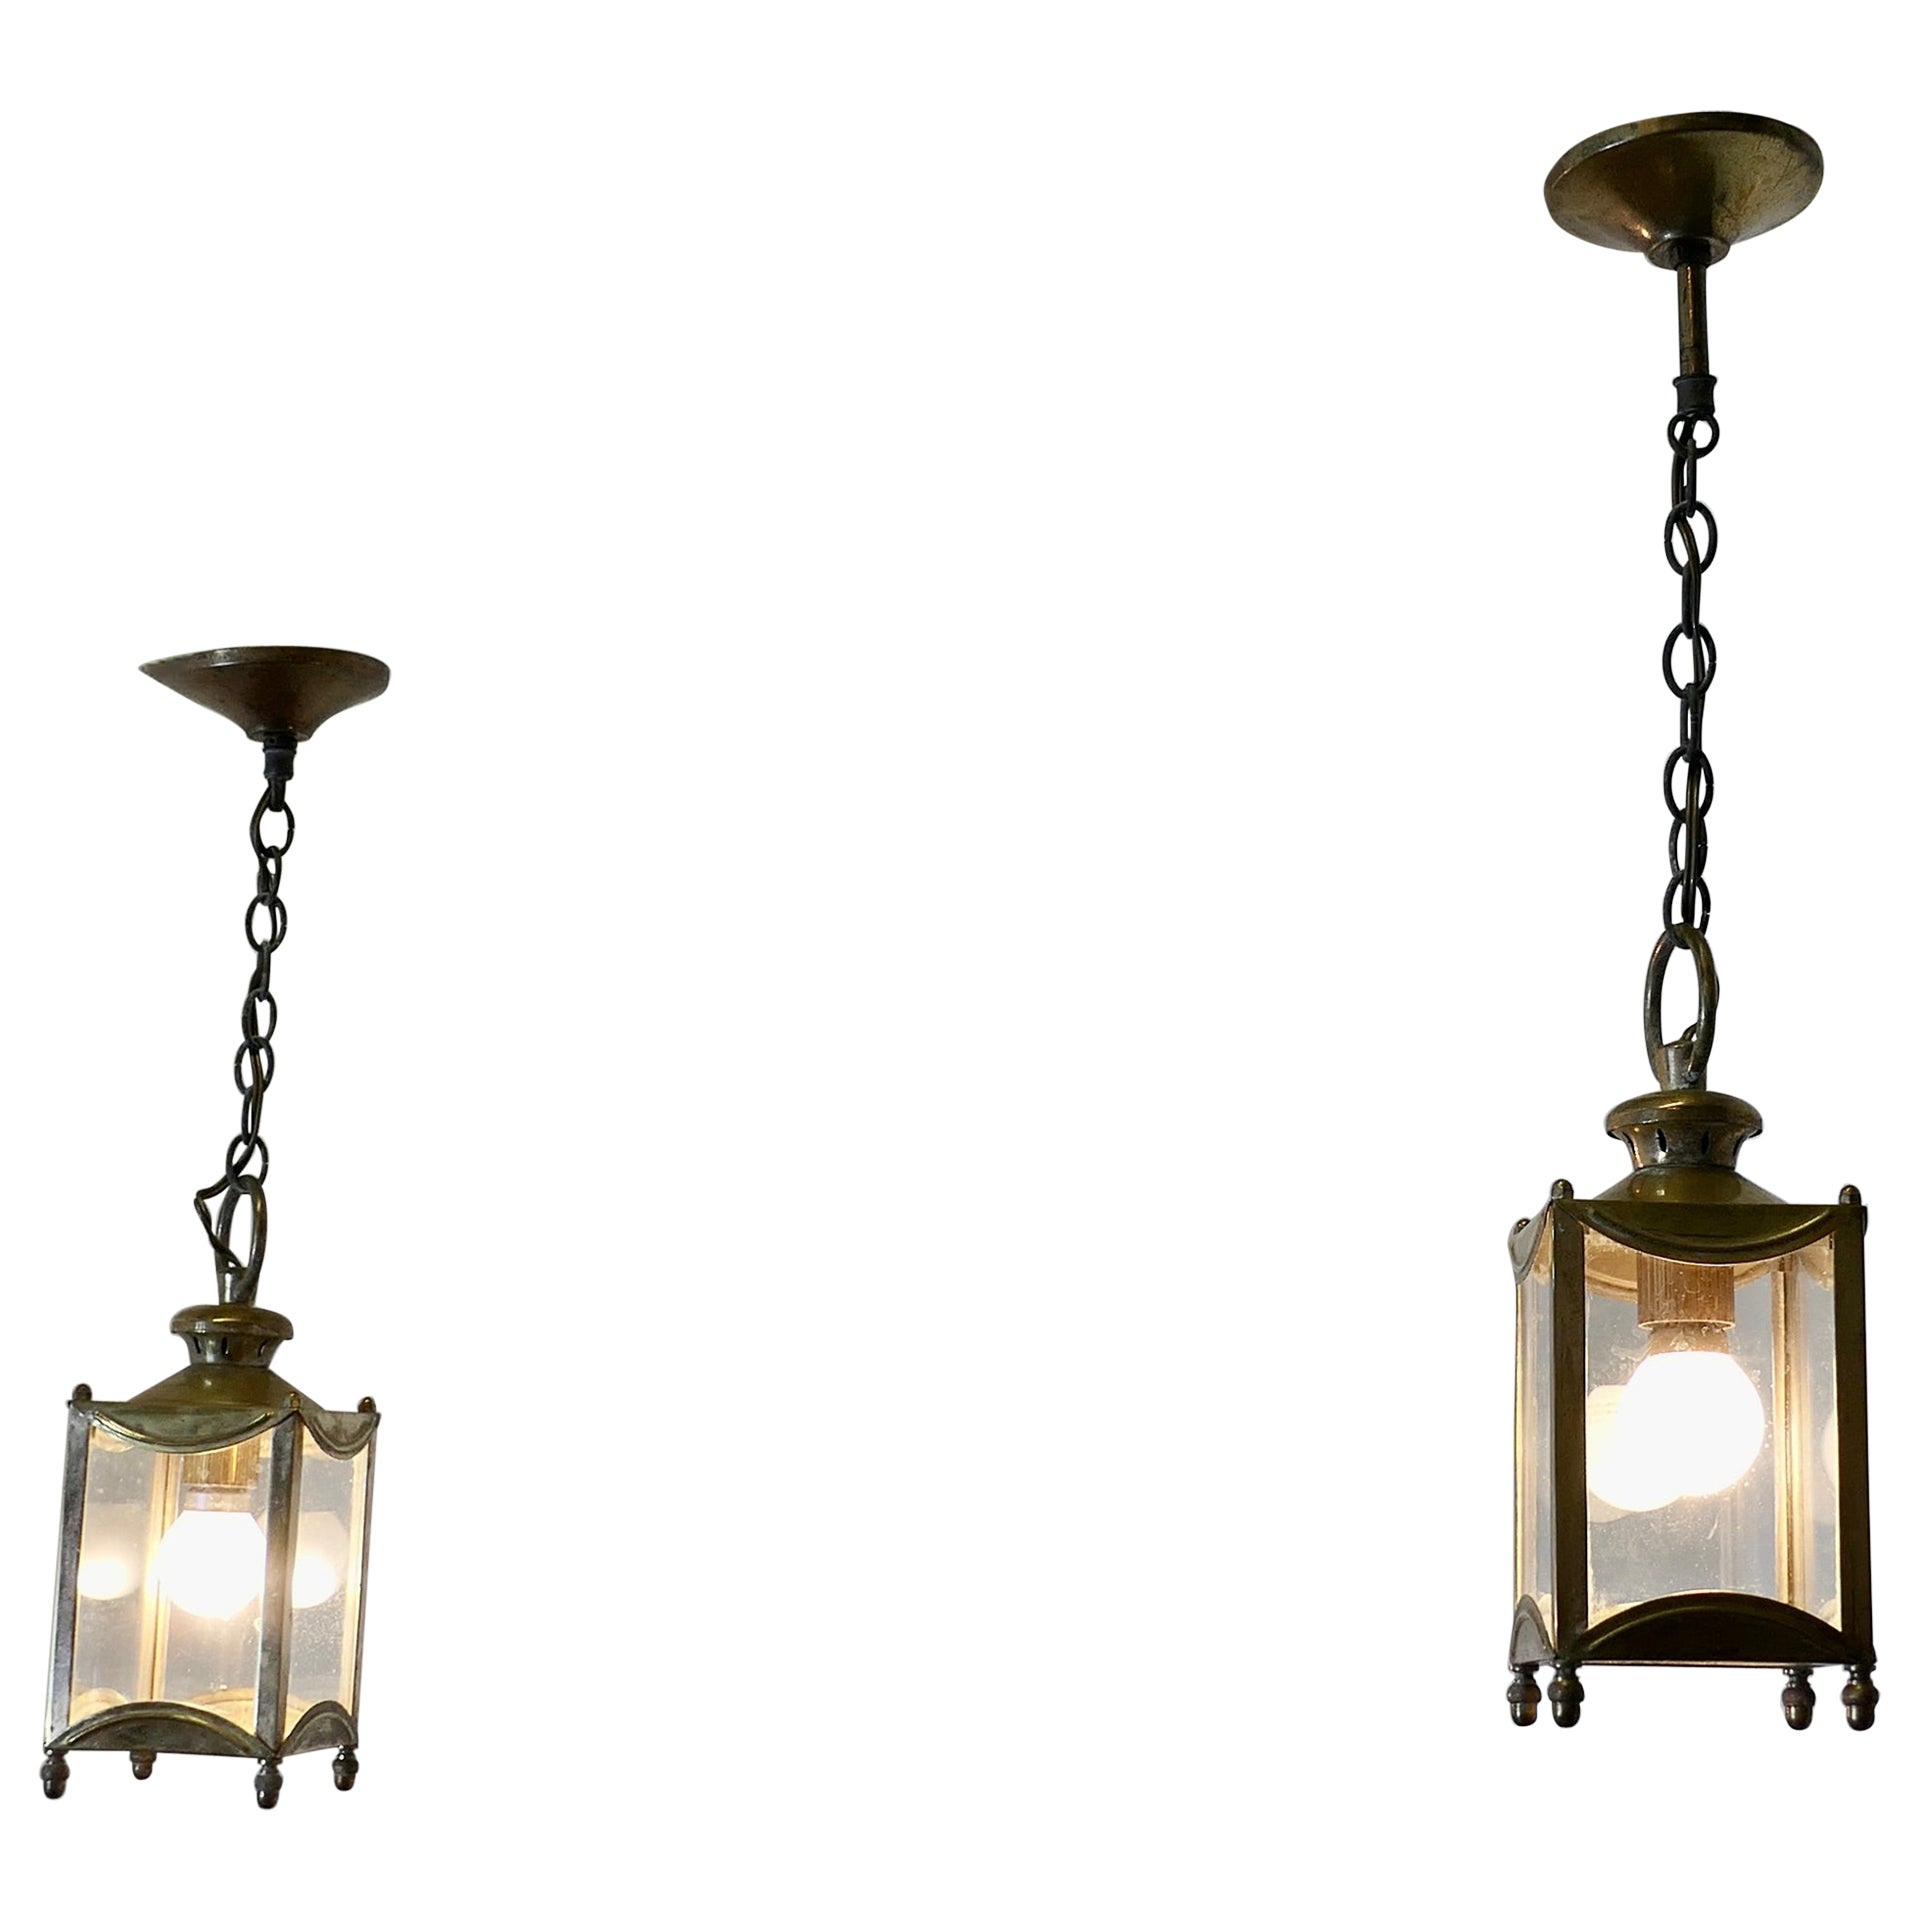 Petite Pair of French Brass and Glass Hall Lantern Lights  Dies ist ein schönes Paar